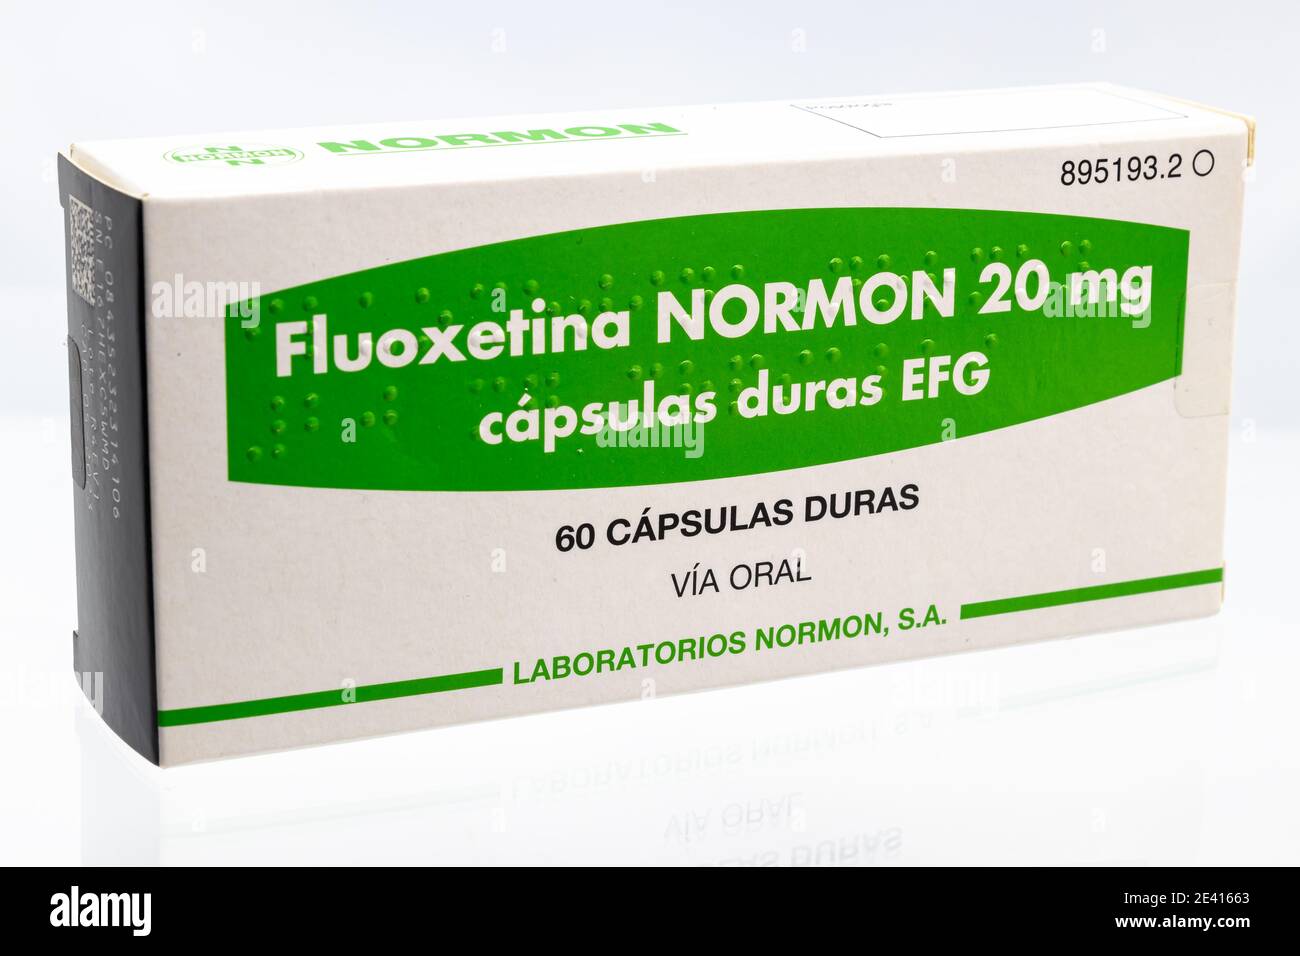 Huelva, Spagna - 21 gennaio 2021: Scatola spagnola di Fluoxetina NORMON 20mg. Fluoxetina è un tipo di antidepressivo noto come SSRI (serotonina selettiva) Foto Stock